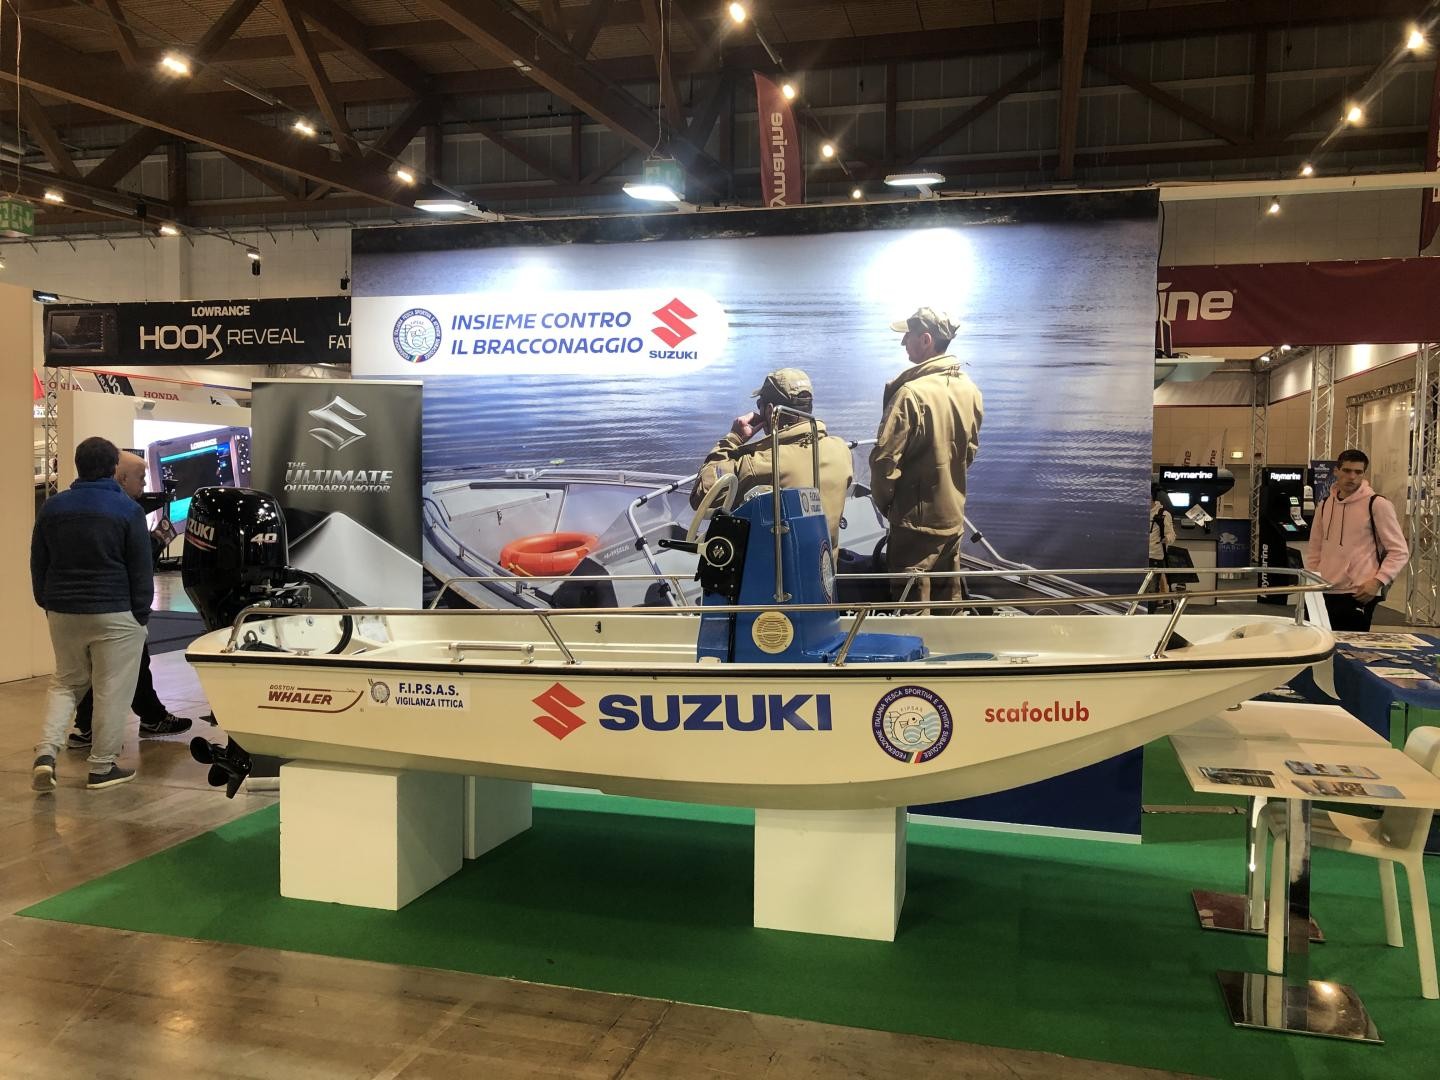 Suzuki e FIPSAS, una promozione dedicata ai tesserati alla federazione